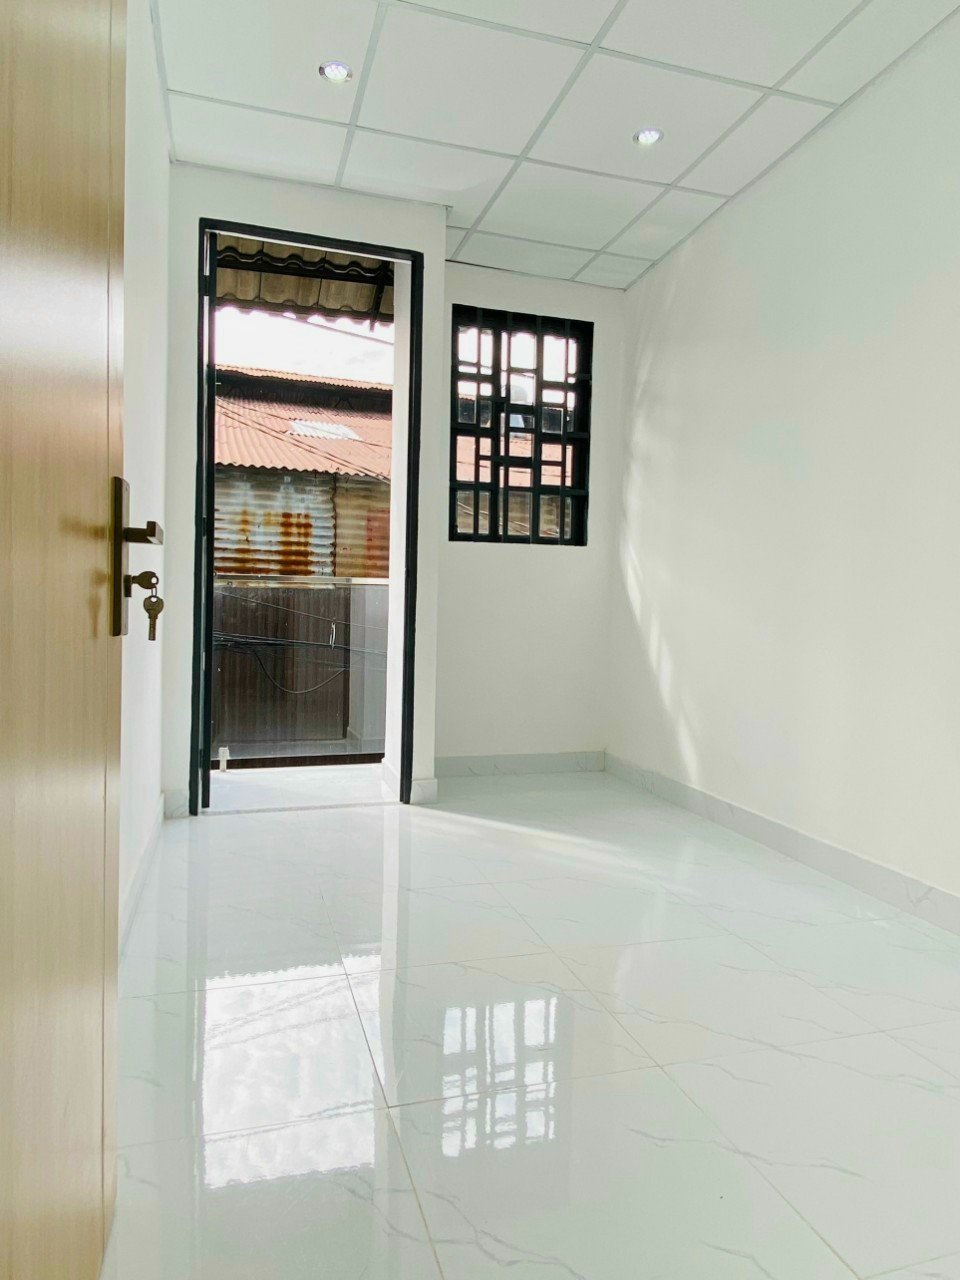 Nhà 2 tầng mới đường Nguyễn Chế Nghĩa, P12 Q8. Giá 2,2 tỷ